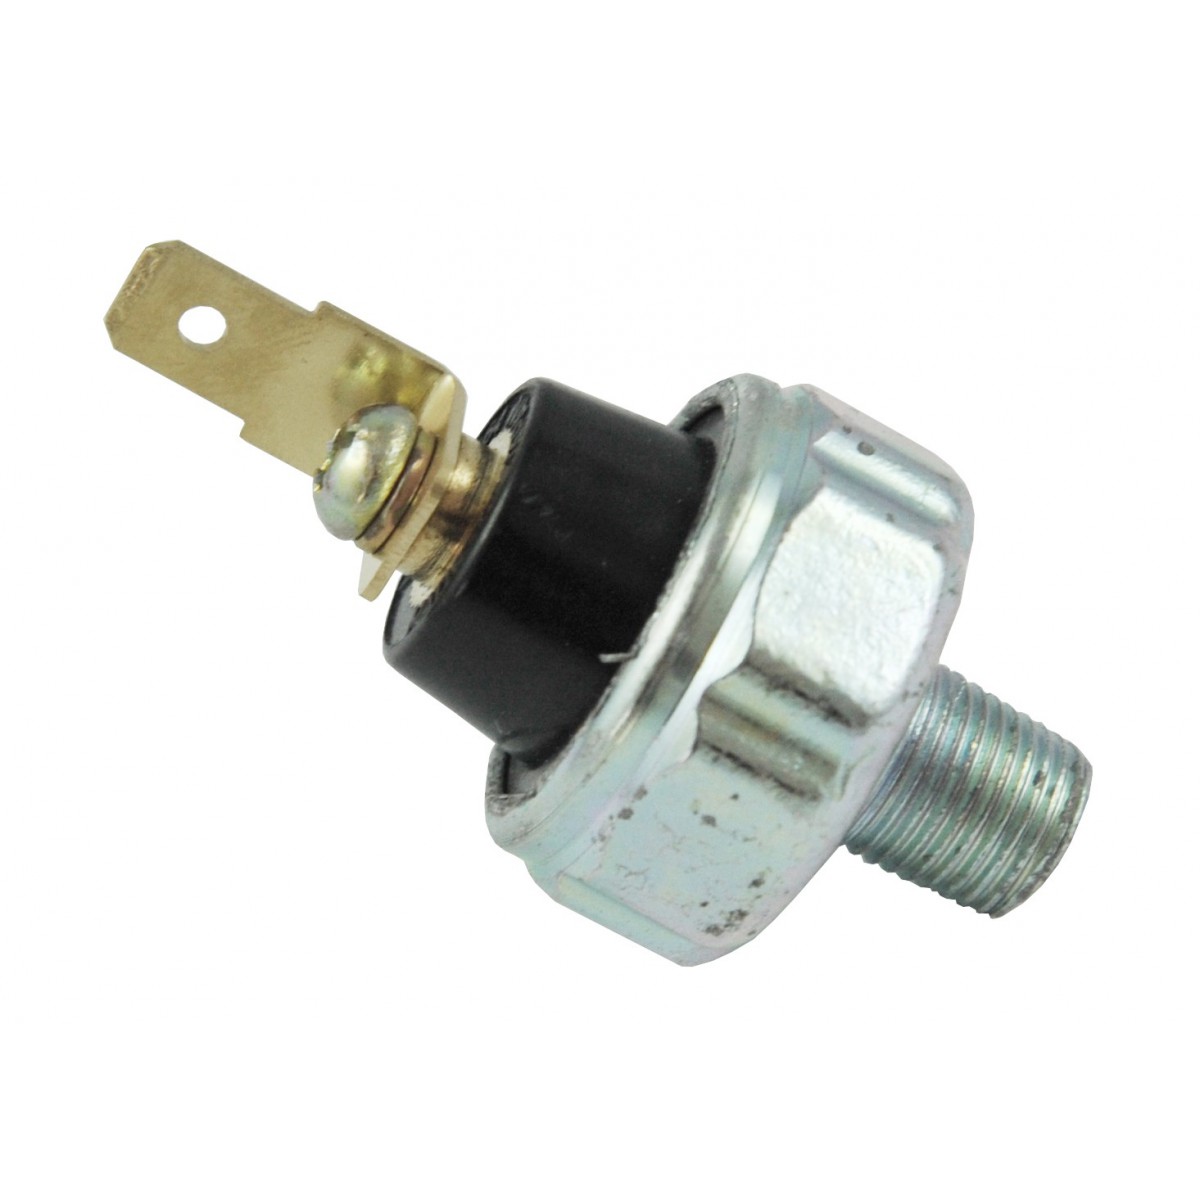 Oil pressure sensor MD138-993, Mitsubishi MTX225, D2000, 2300, MT630, MT245